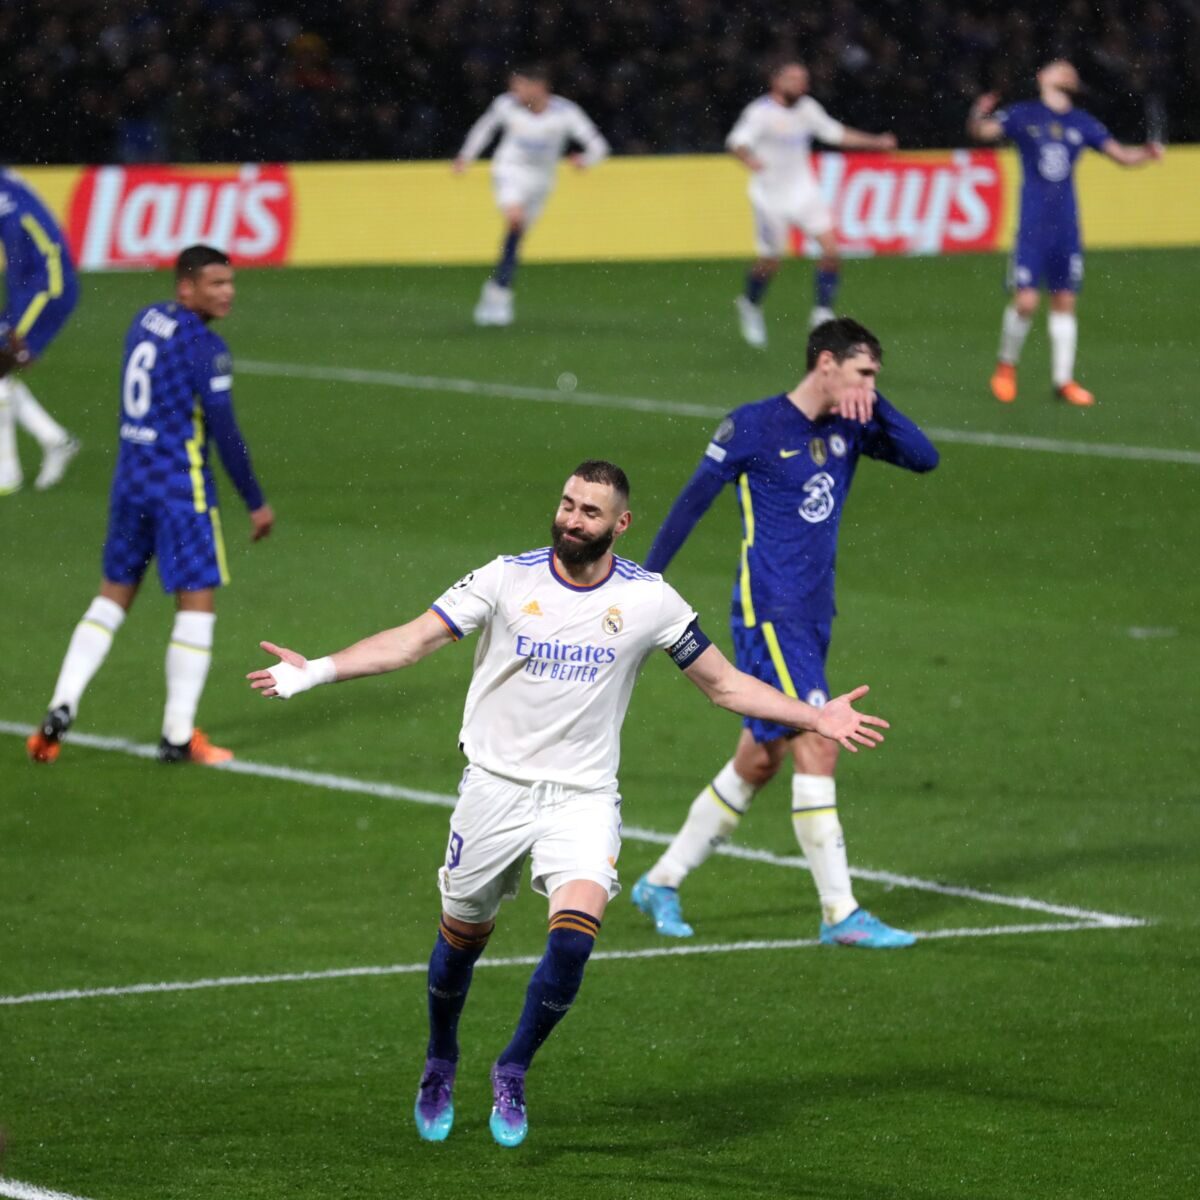 Doble victoria española en jornada de cuartos de la 'Champions' El Real Madrid se impuso 3-1 al Chelsea en Londres este miércoles, con una tripleta de Karim Benzema, en la ida de los cuartos de final de la 'Champions League', así consigue una ventaja importante de cara a la vuelta la próxima semana en el Estadio Santiago Bernabéu.